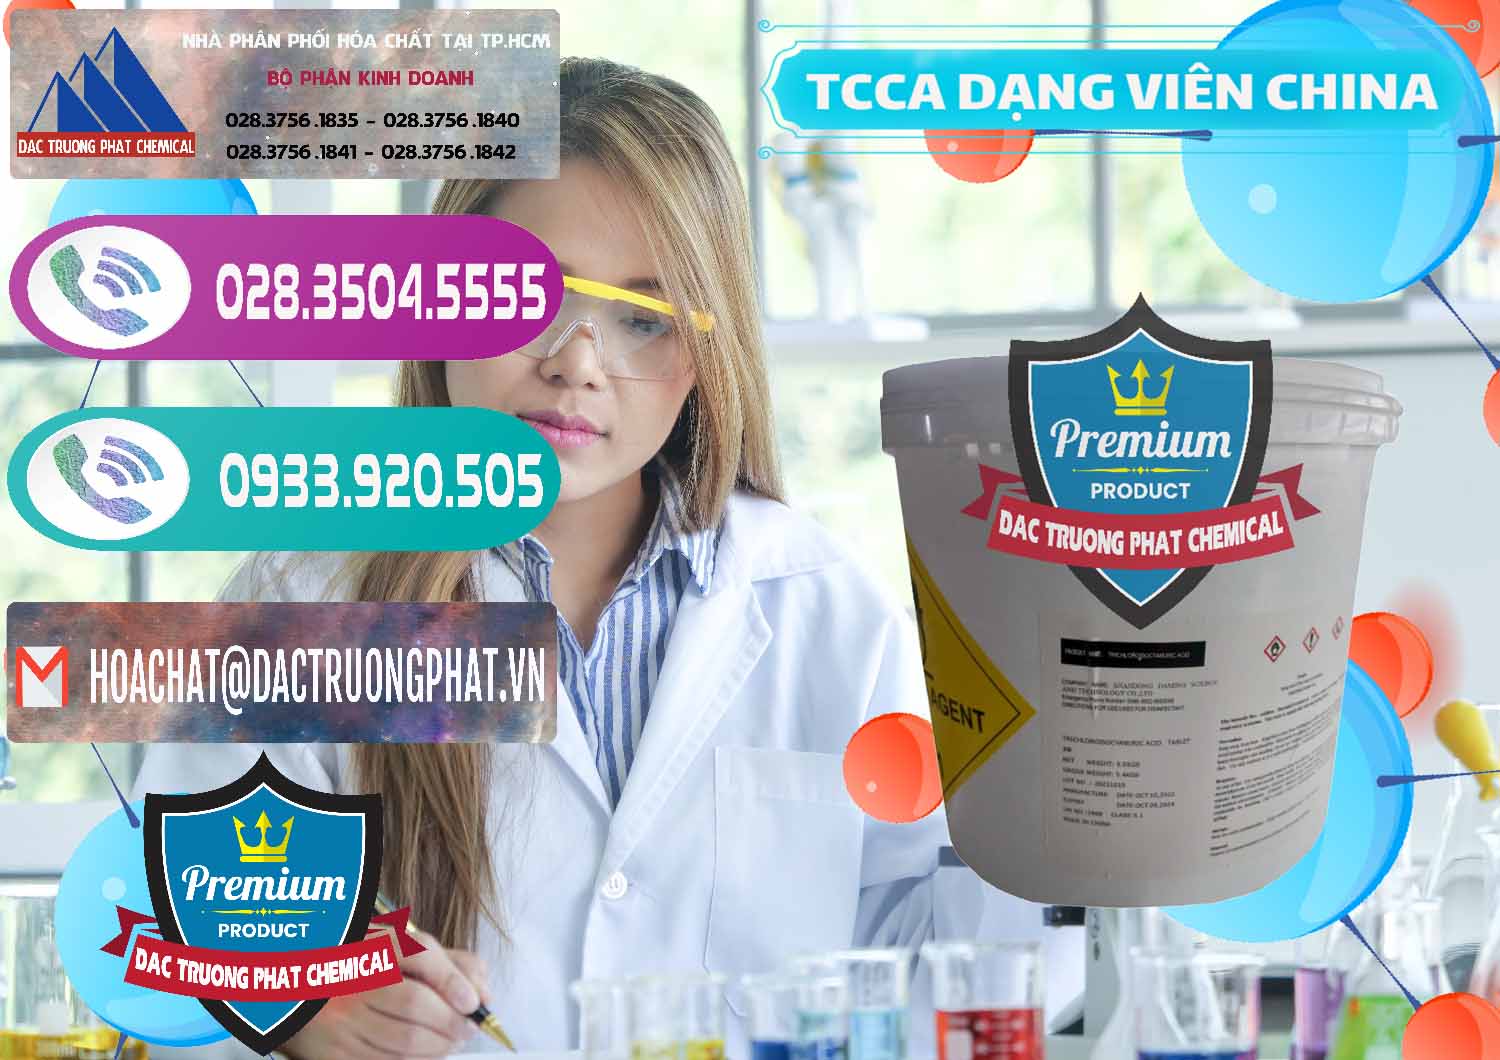 Cty chuyên cung cấp - bán TCCA - Acid Trichloroisocyanuric Dạng Viên Thùng 5kg Trung Quốc China - 0379 - Công ty phân phối & bán hóa chất tại TP.HCM - hoachatxulynuoc.com